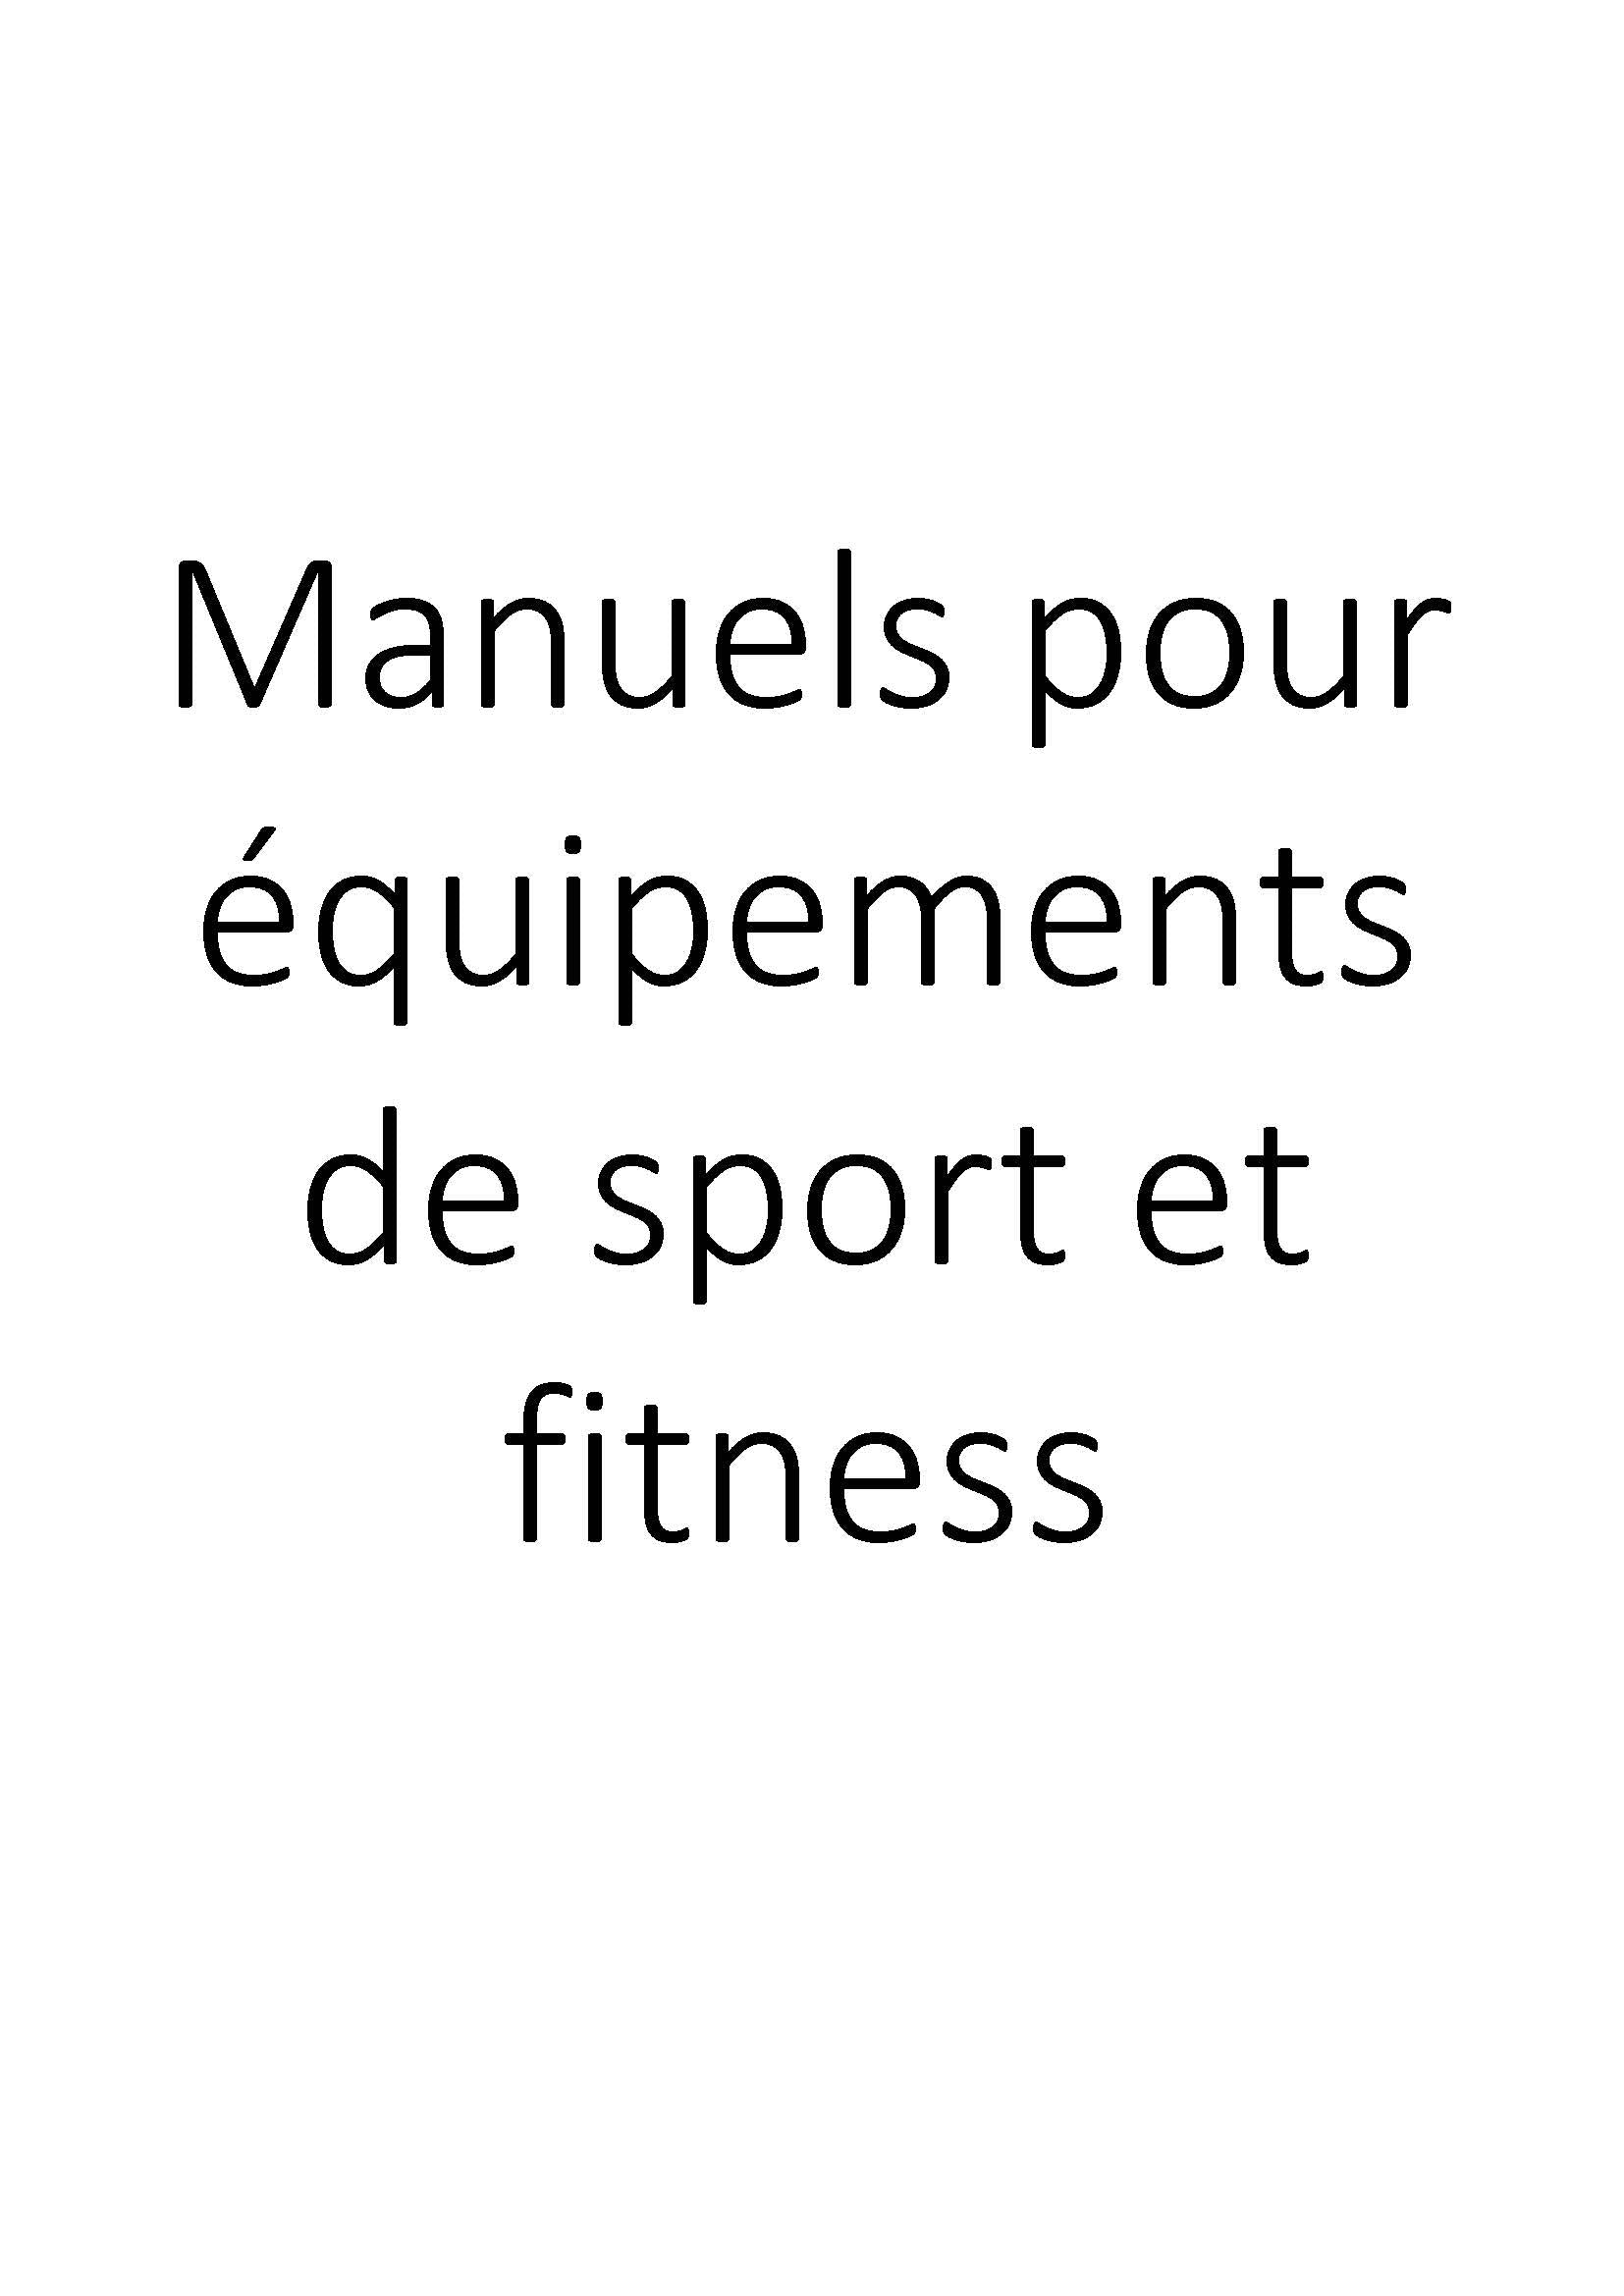 Manuels pour équipements de sport et fitness clicktofournisseur.com